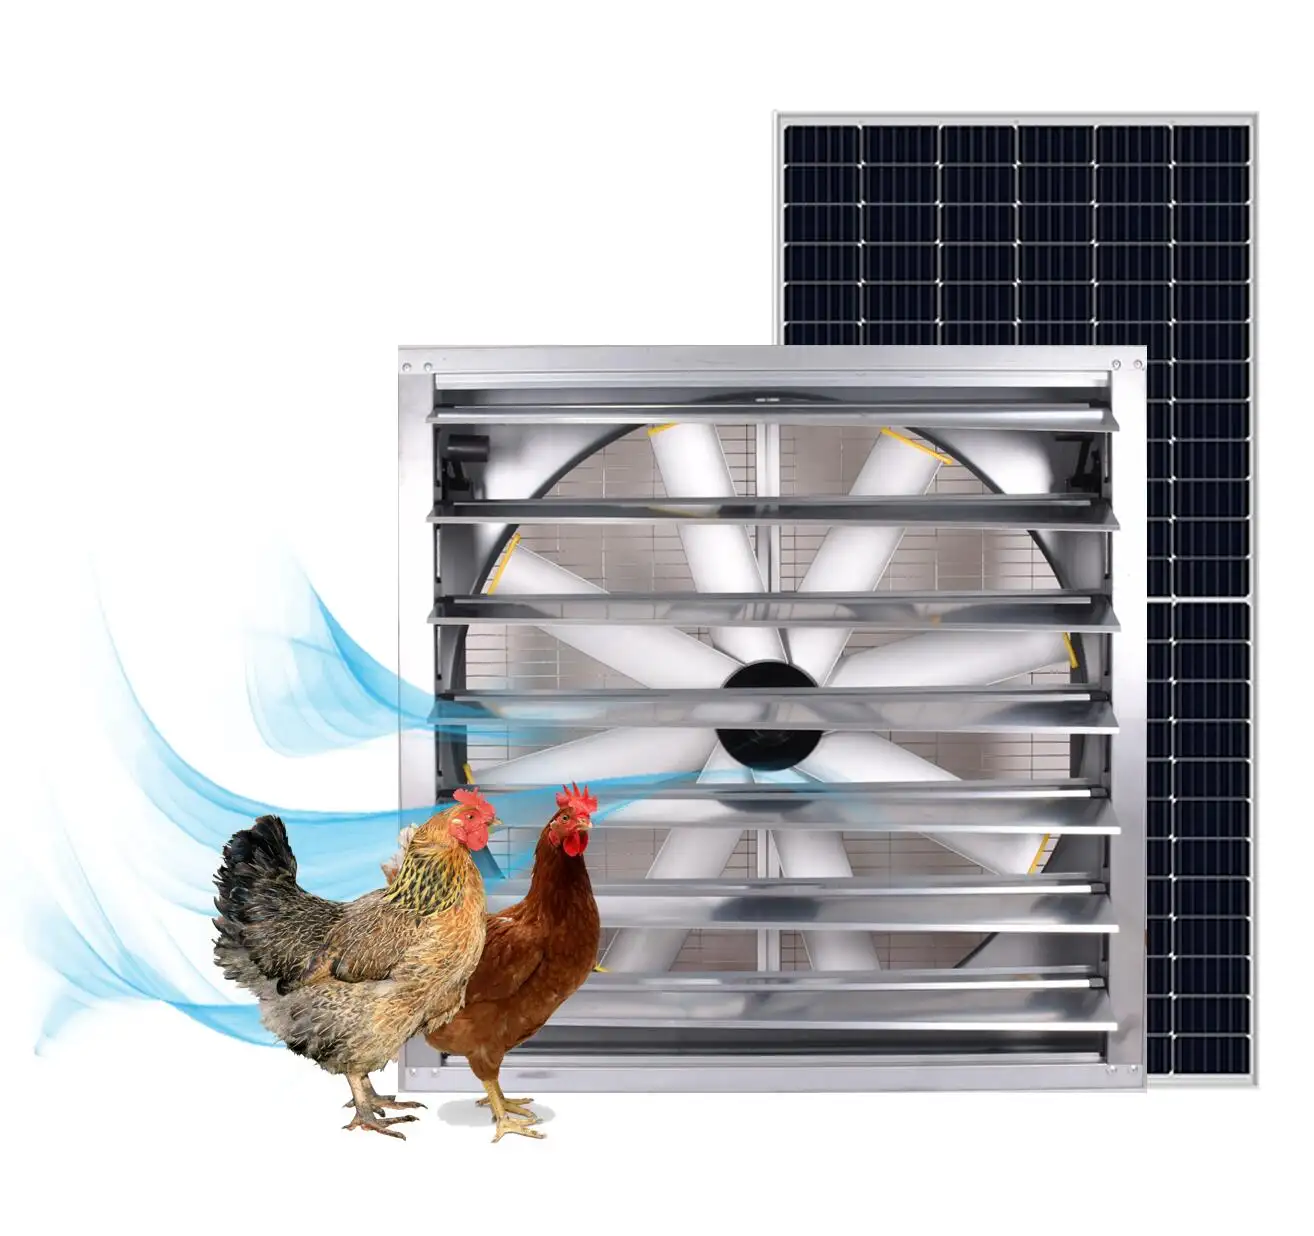 Geflügelfarm ventilator 440W 48 Zoll große solar betriebene Lüftungs ventilatoren für Milch hühner Schweine farm ventilator